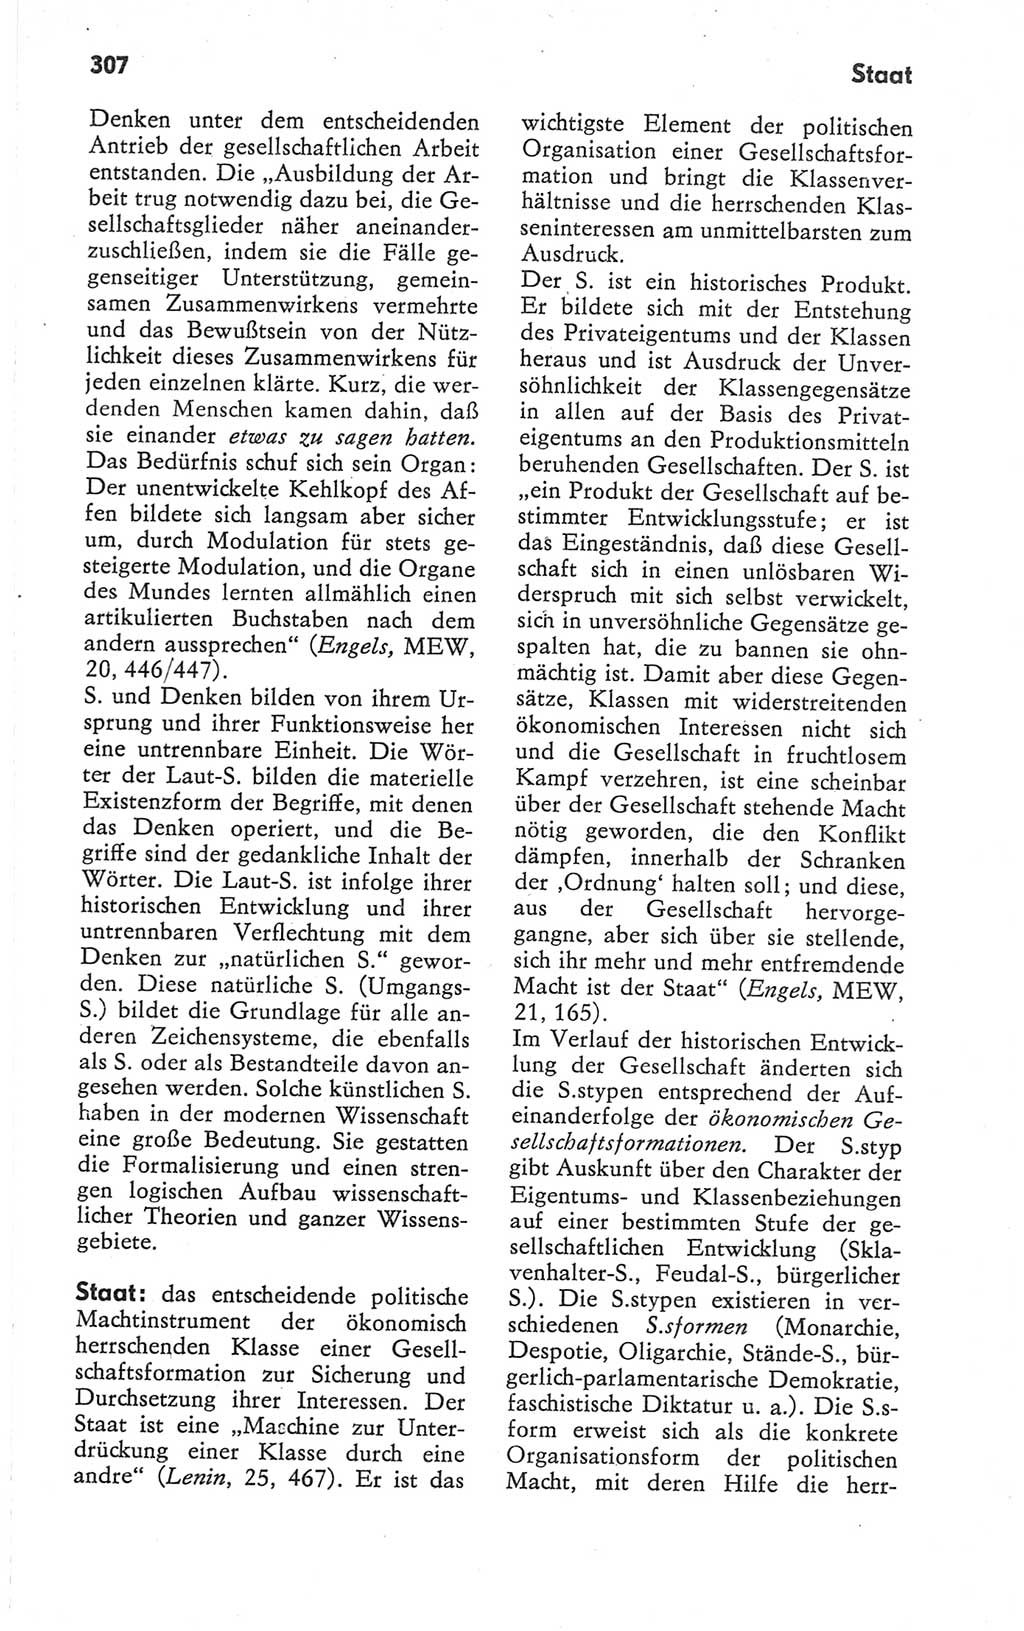 Kleines Wörterbuch der marxistisch-leninistischen Philosophie [Deutsche Demokratische Republik (DDR)] 1979, Seite 307 (Kl. Wb. ML Phil. DDR 1979, S. 307)